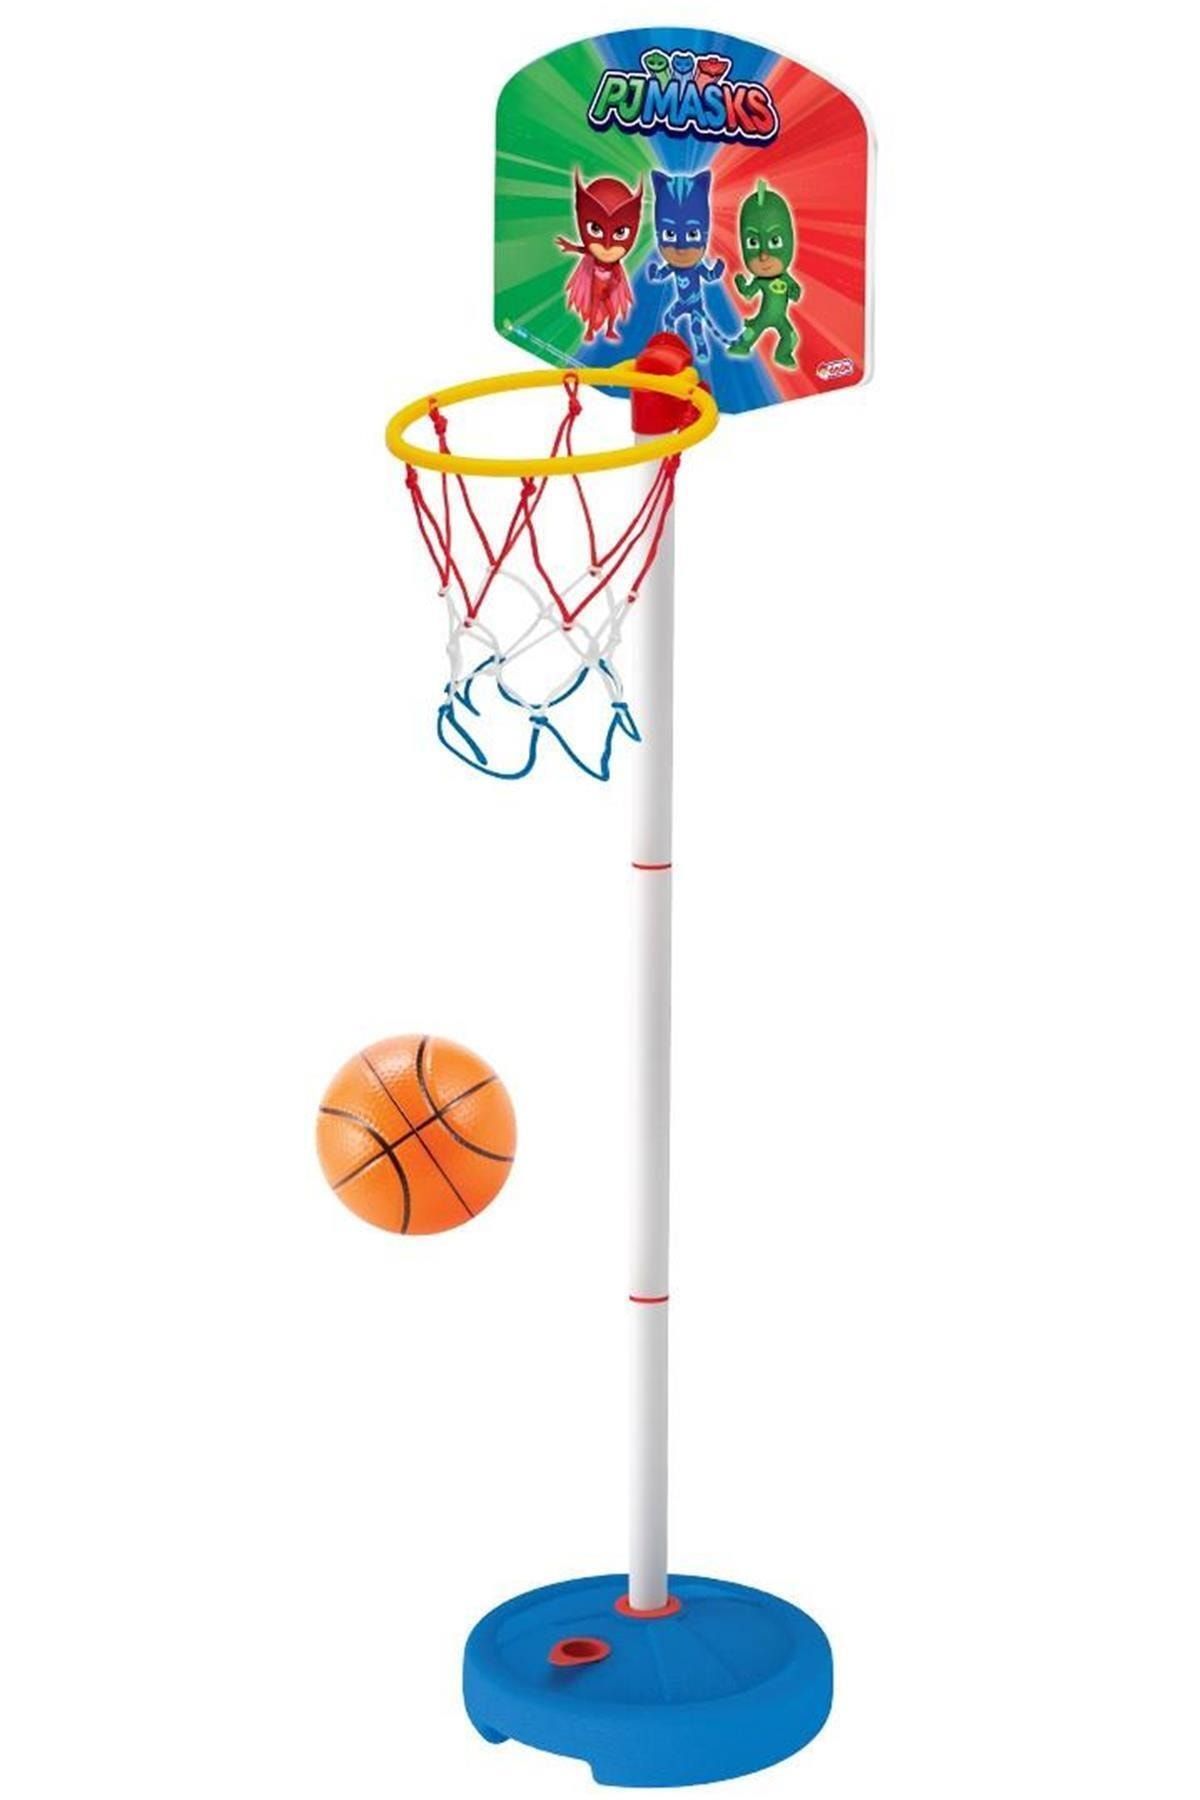 DEDE Marka: Pjmasks Küçük Ayaklı Basketbol Potası Kategori: Basketbol Potası